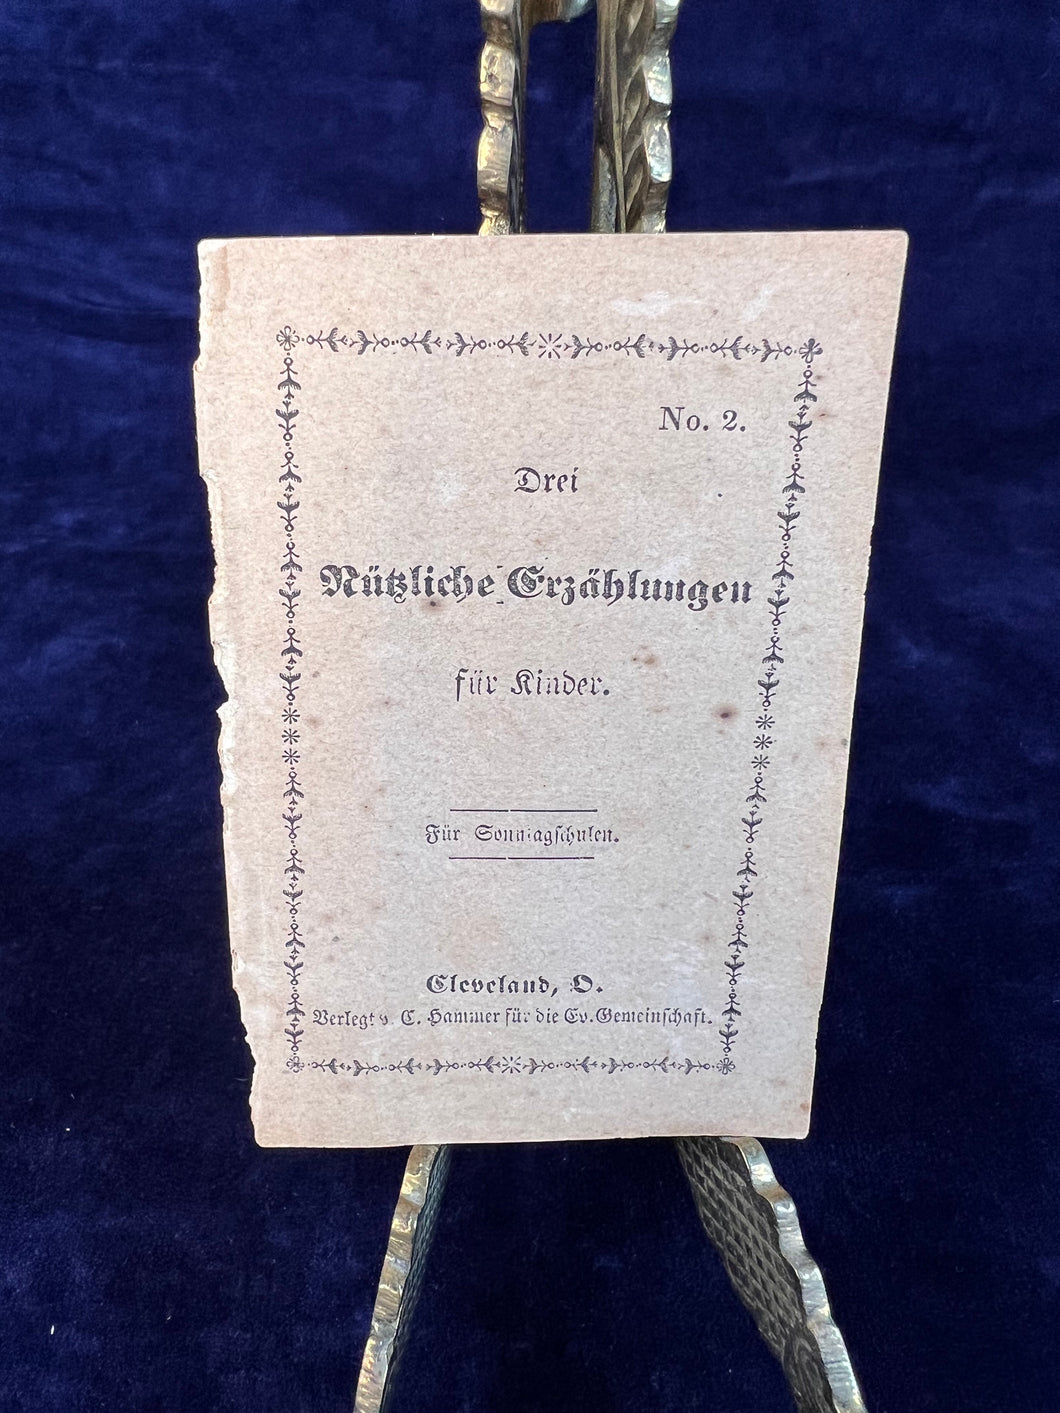 German Chapbook Printing in Ohio: Drei Nußliche Erzählungen für Kinder (1858)